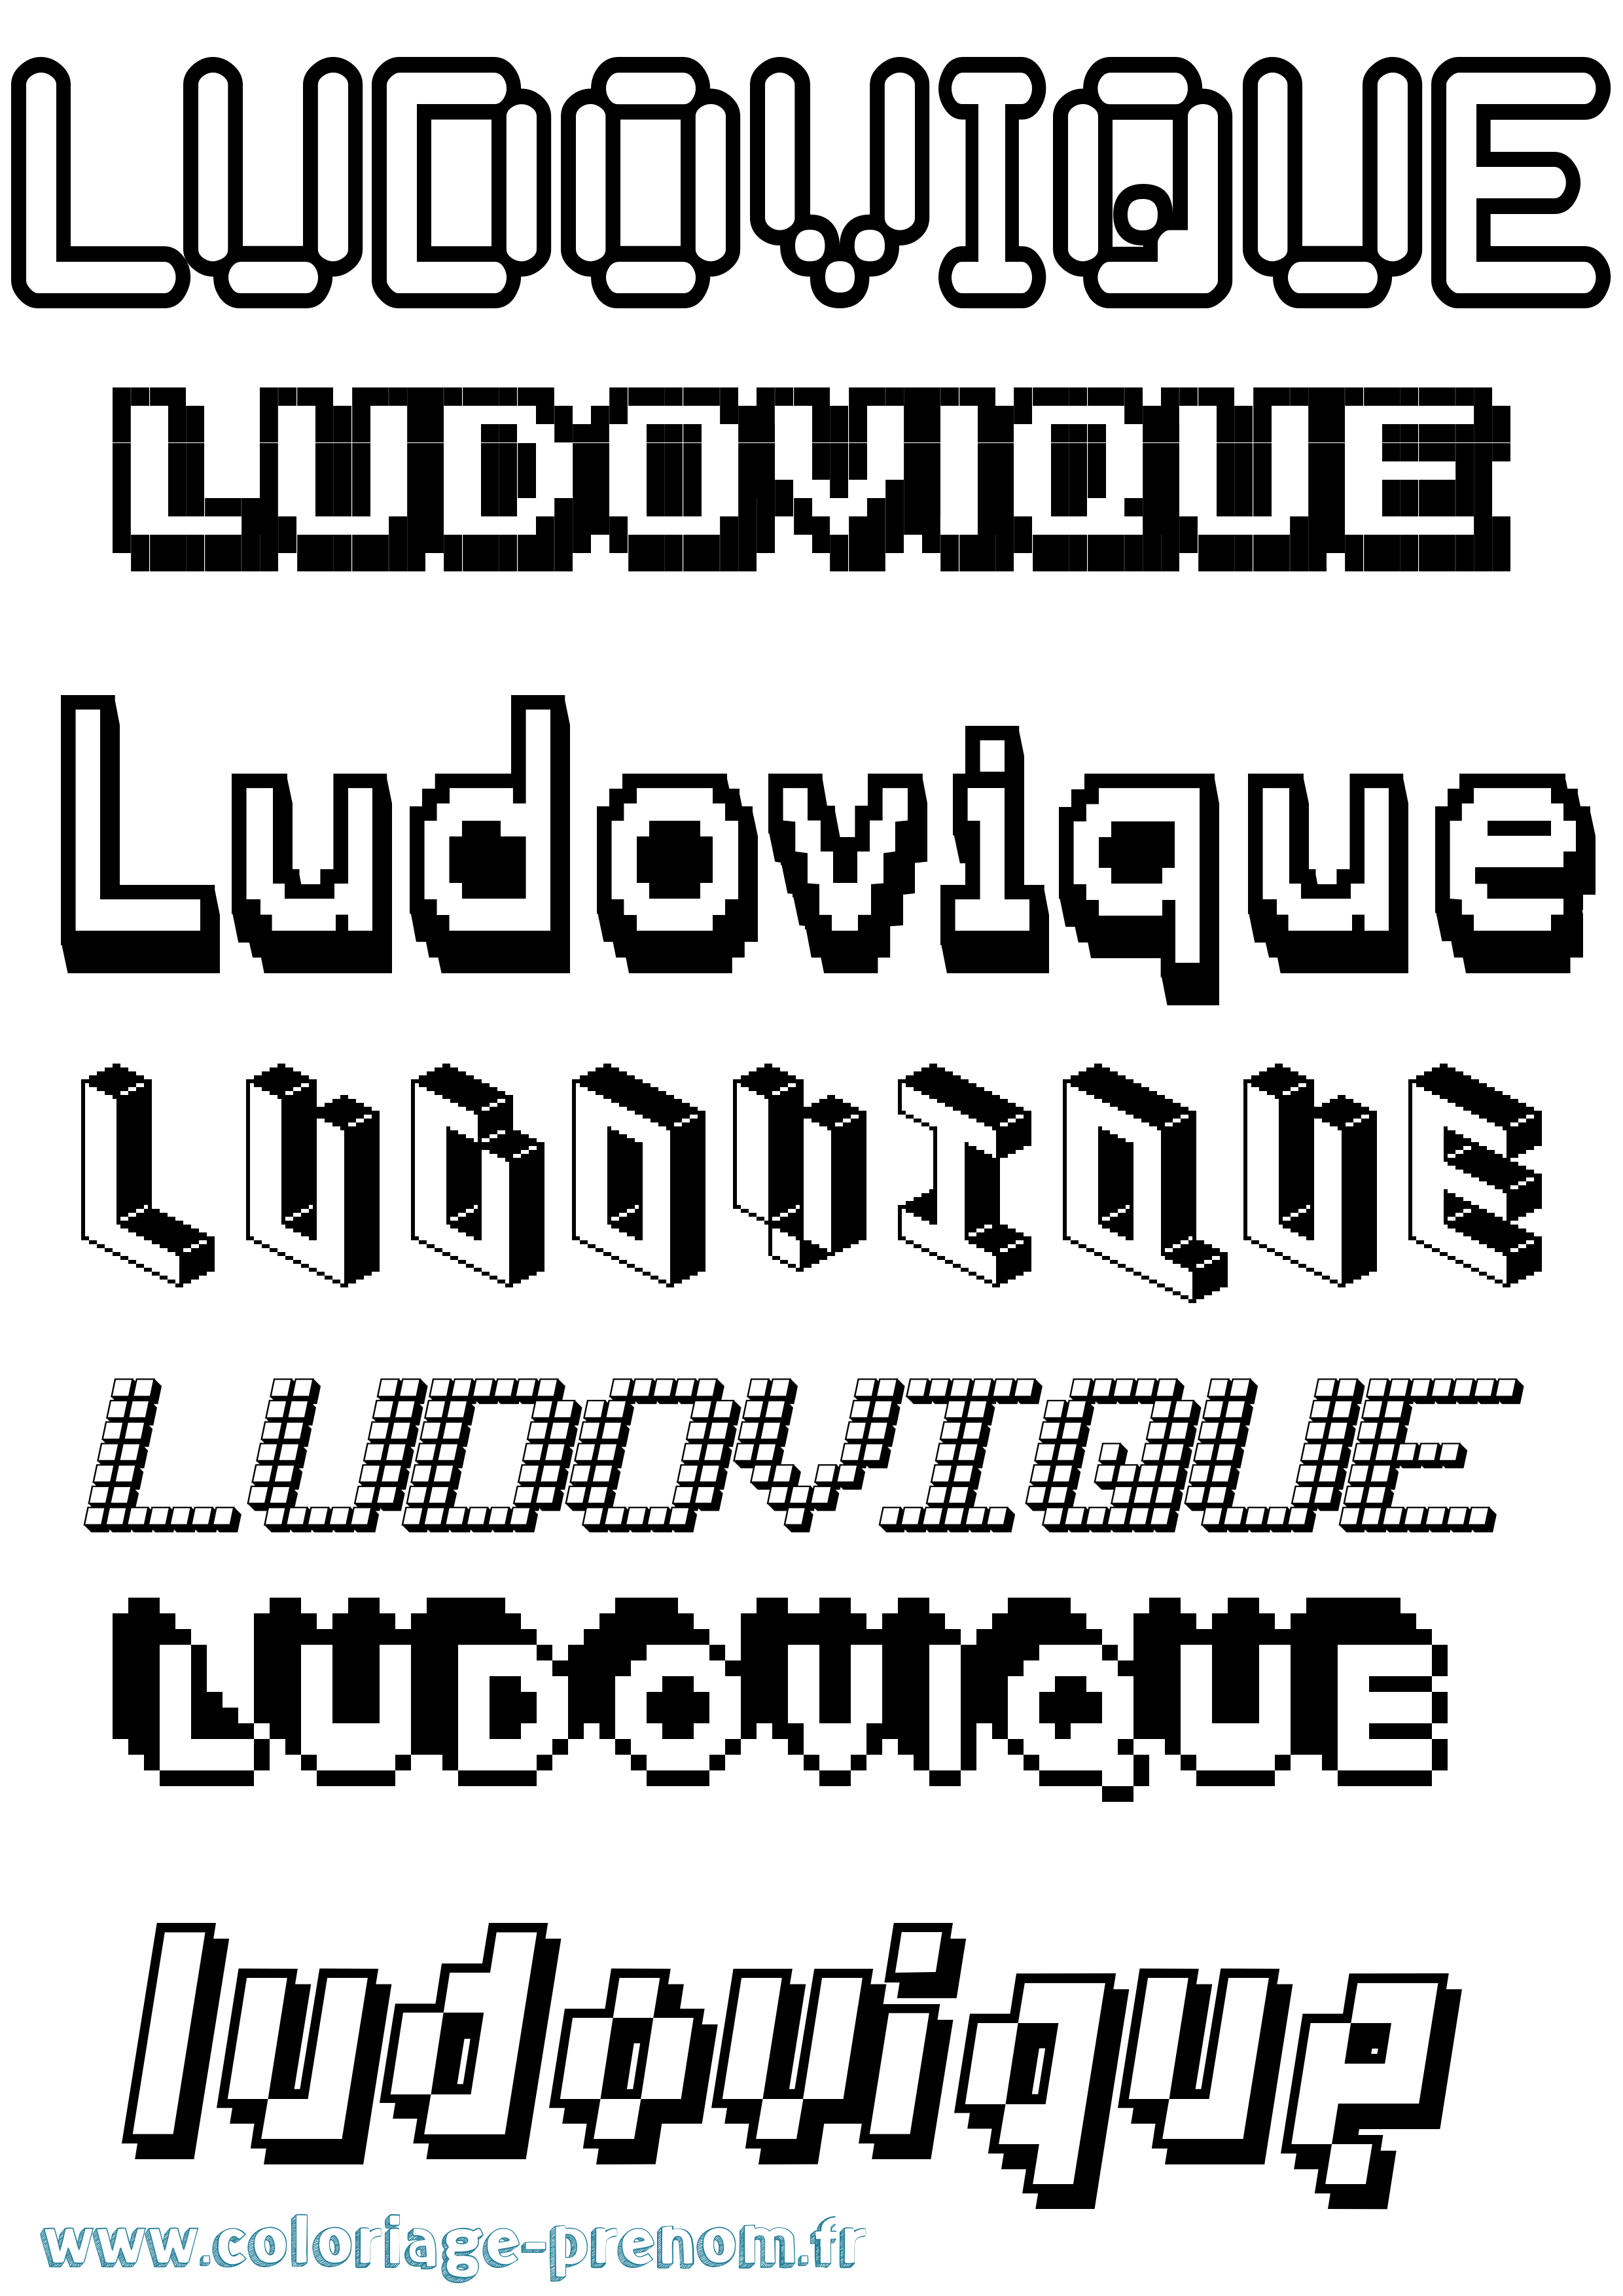 Coloriage prénom Ludovique Pixel